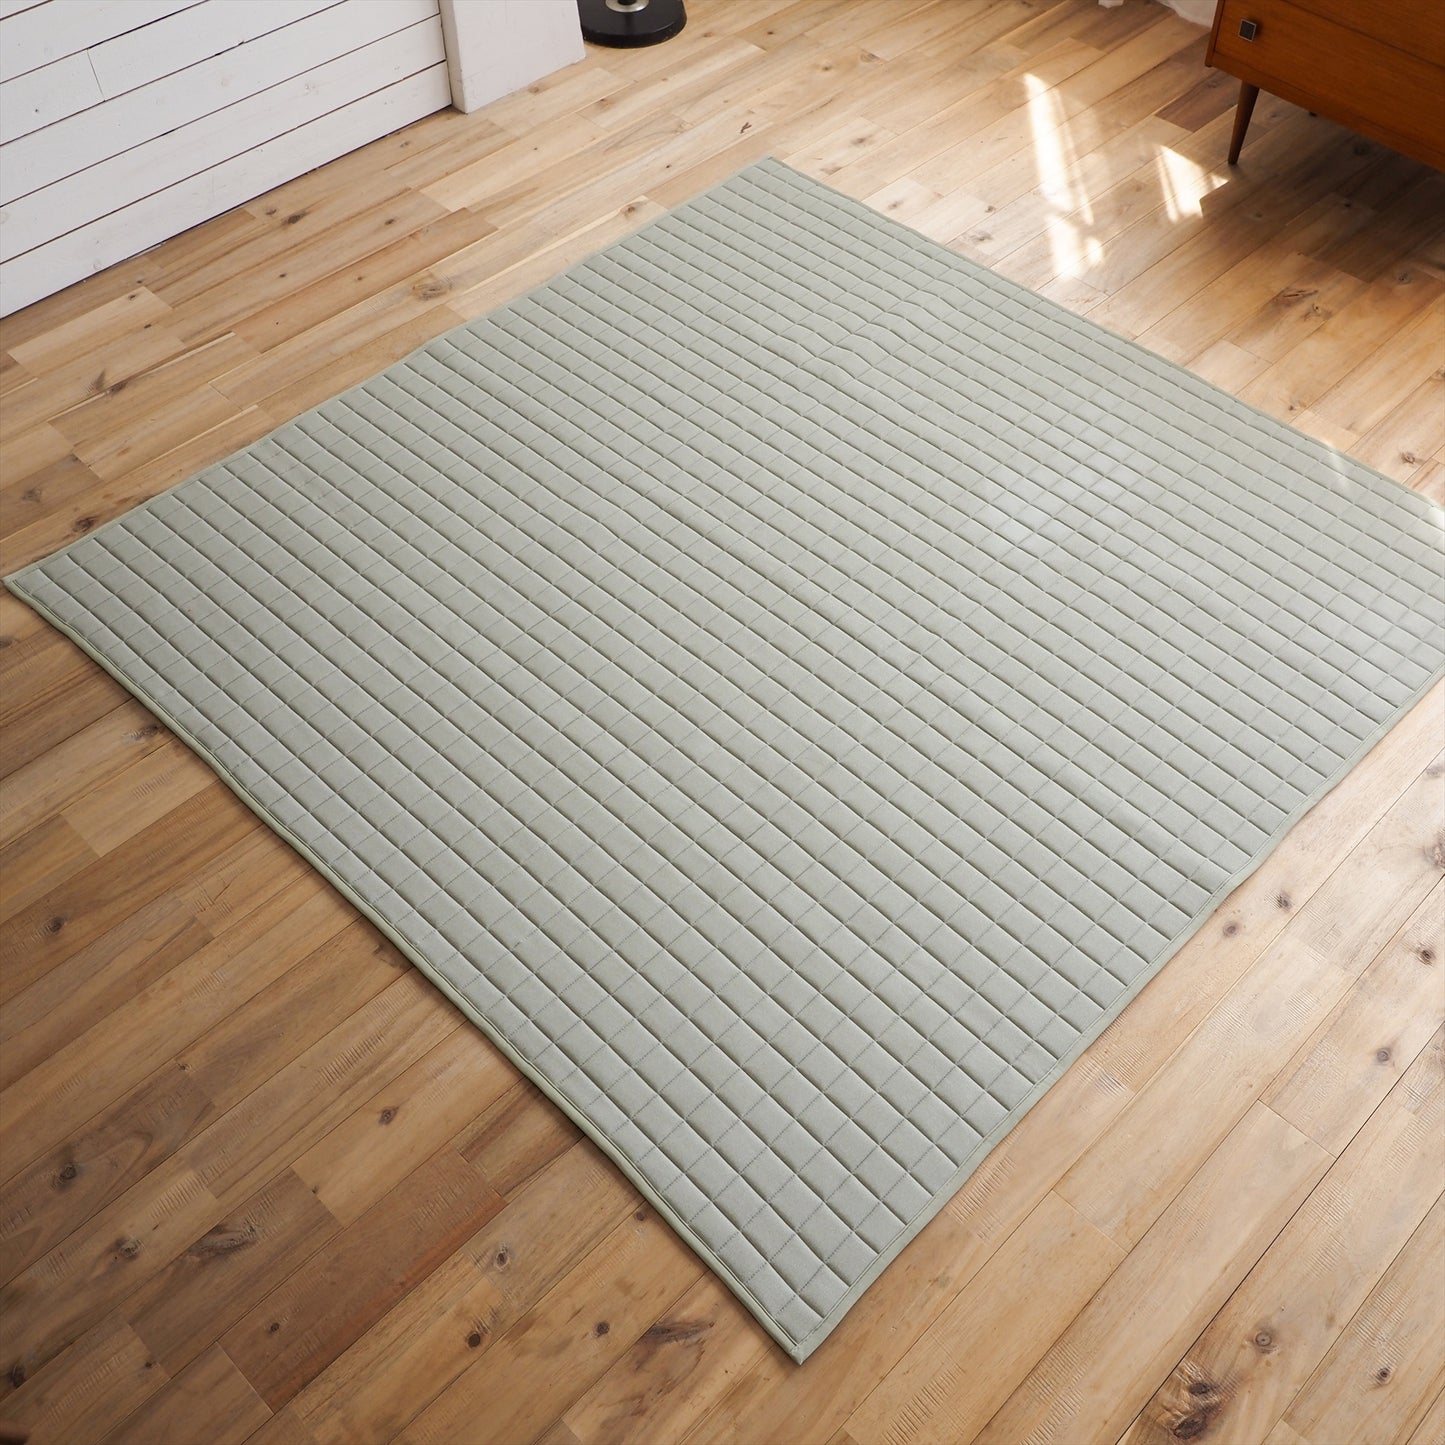 床暖 ホットカーペット対応 ラグマット 洗える サラッとニットの もちフワキルトラグ